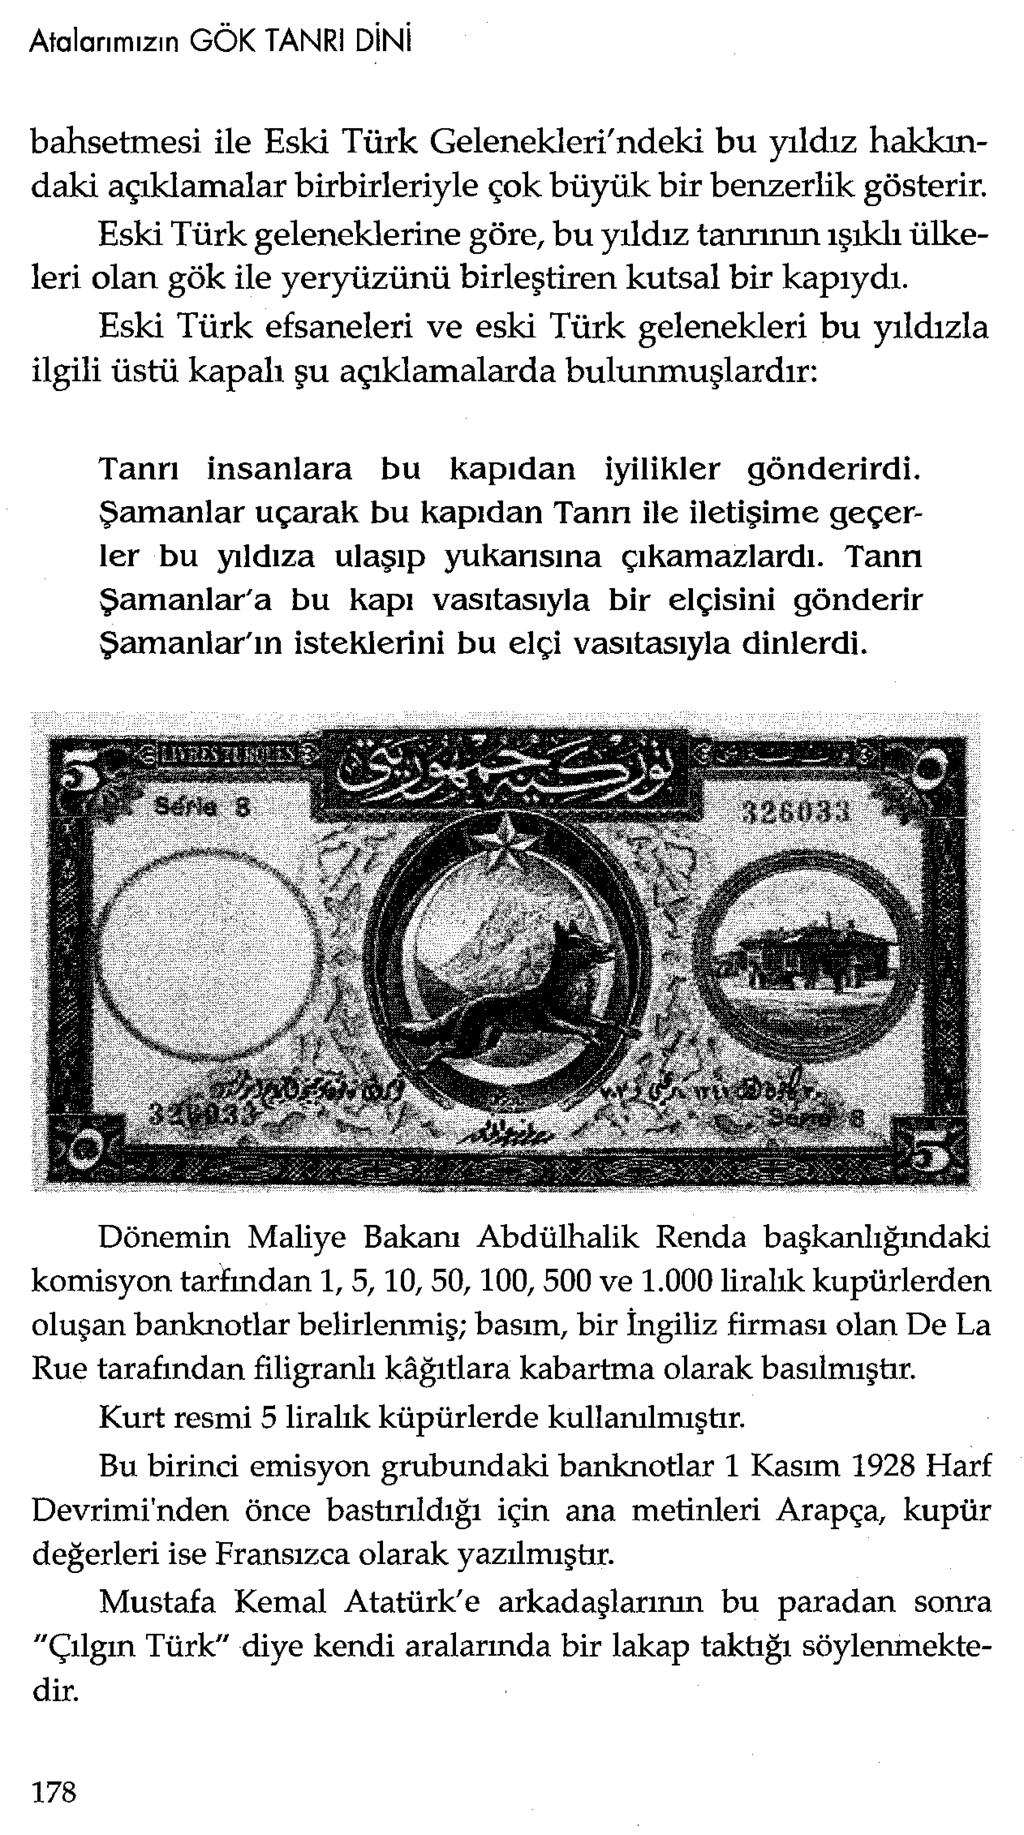 bahsetmesi ile Eski Türk Gelenekleri'ndeki bu yıldız hakkındaki açıklamalar birbirleriyle çok büyük bir benzerlik gösterir.